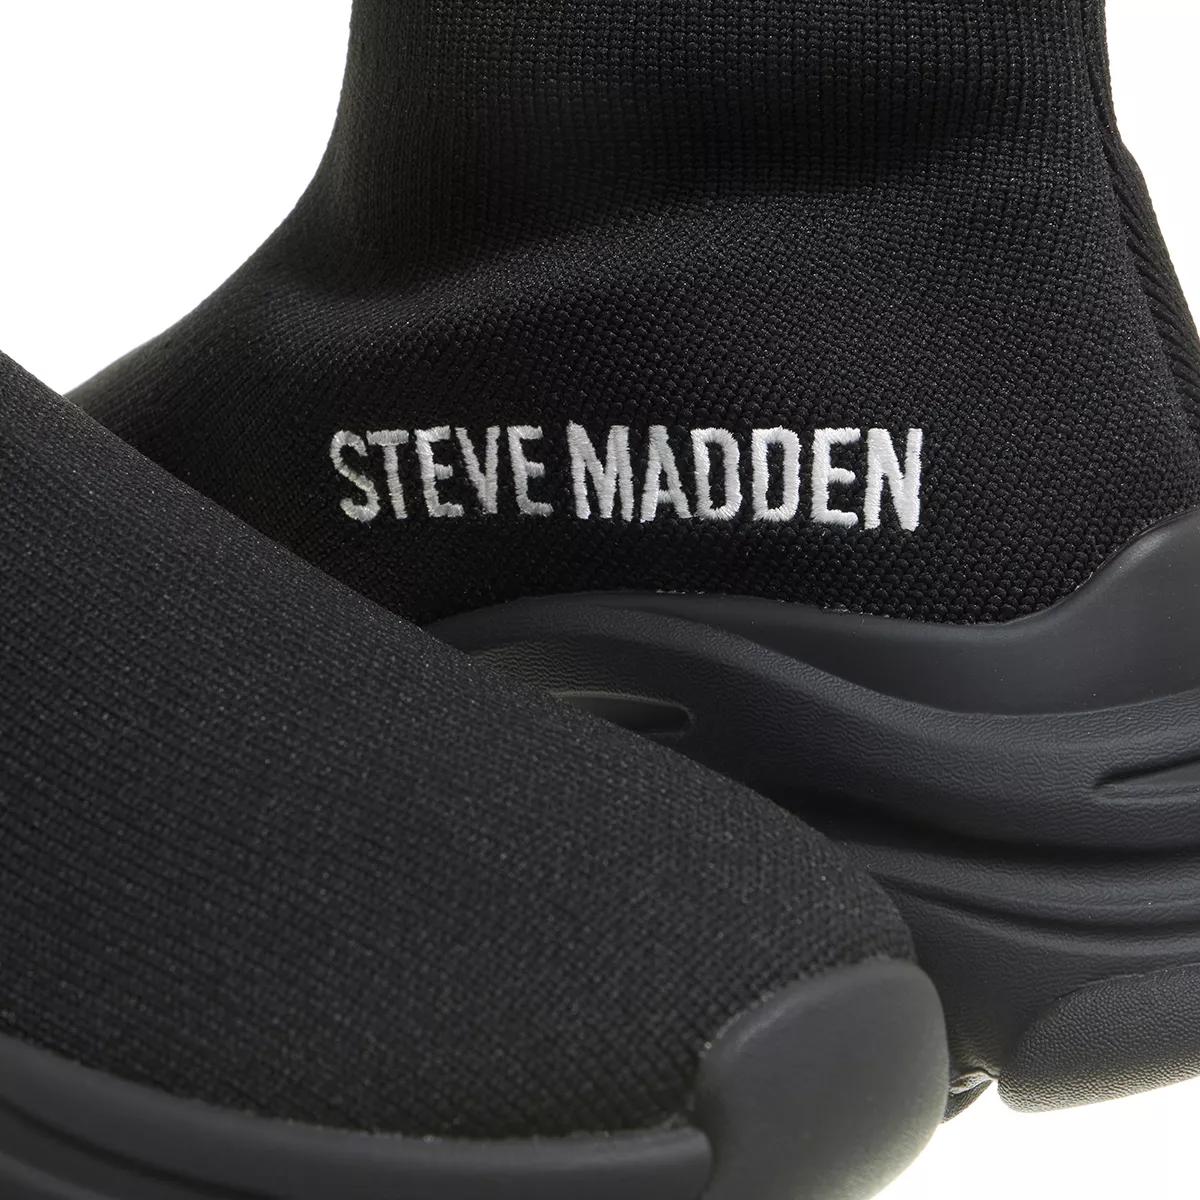 Steve Madden Sneakers - Partisan - Gr. 37 (EU) - in Schwarz - für Damen von Steve Madden